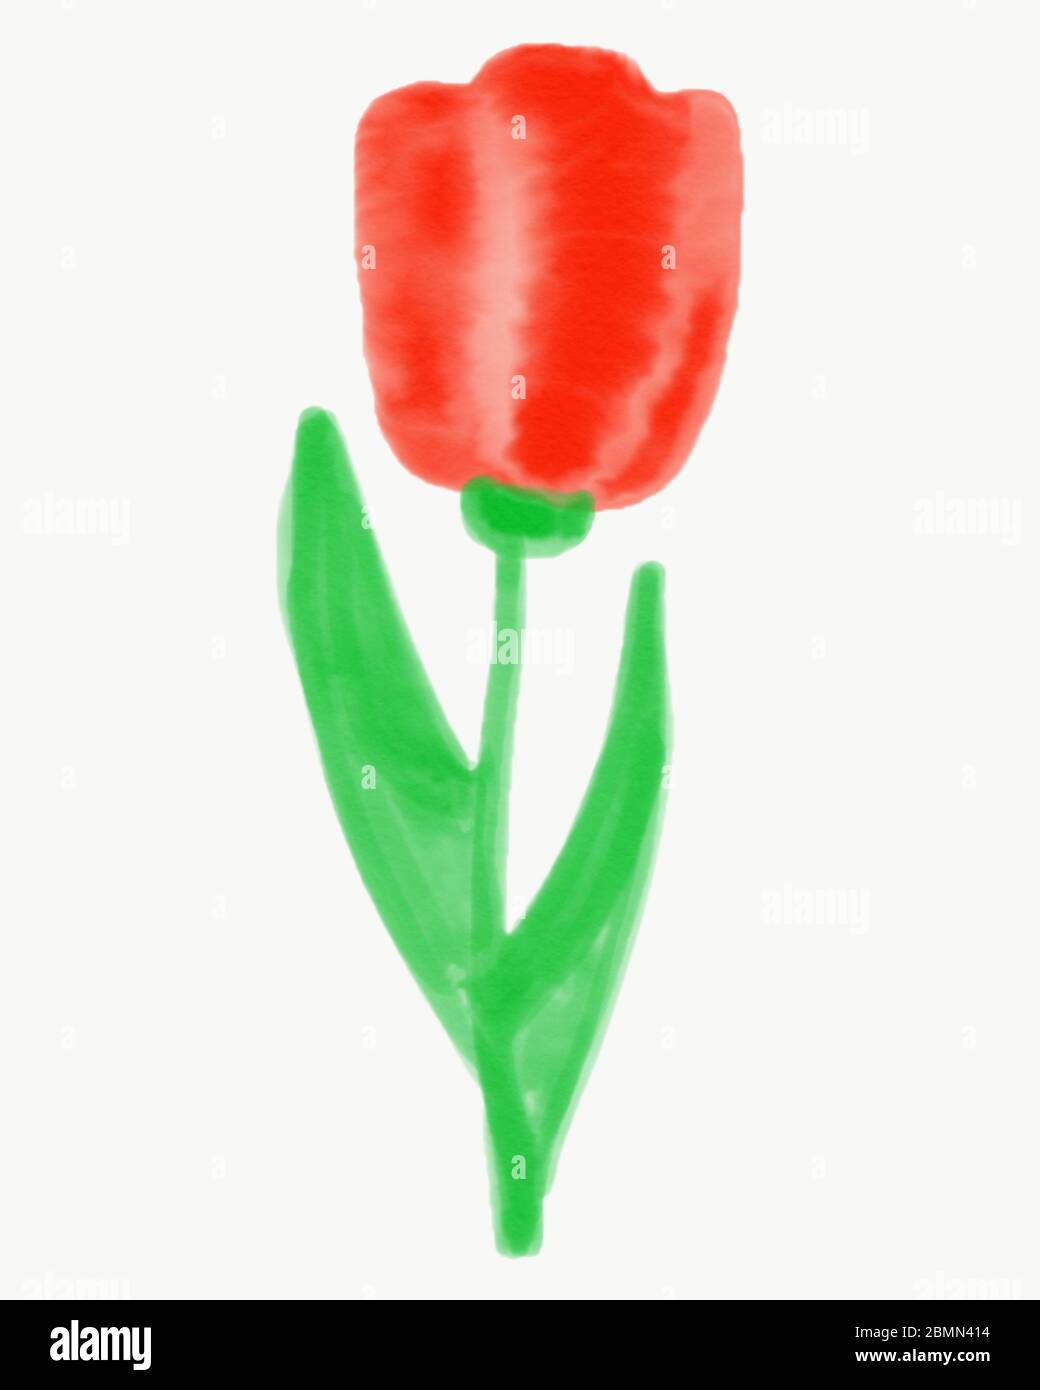 Tulipe rouge sur une tige avec des pétaks sur un fond blanc isolat. Dessin aquarelle d'une fleur de tulipe, forme de fleur classique avec scarlet p Banque D'Images